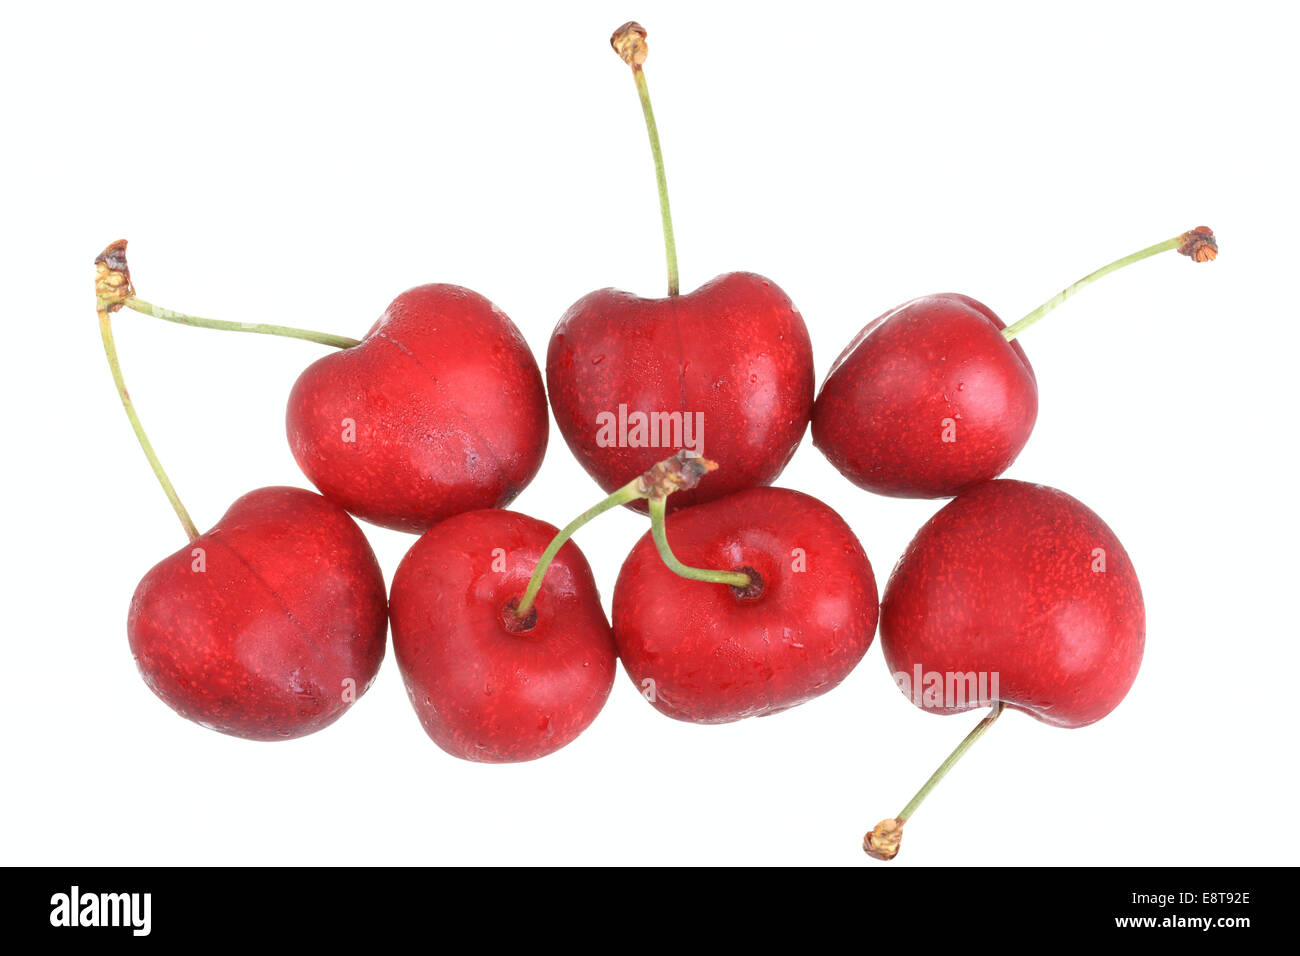 Sweet cherries, Samba variety Stock Photo